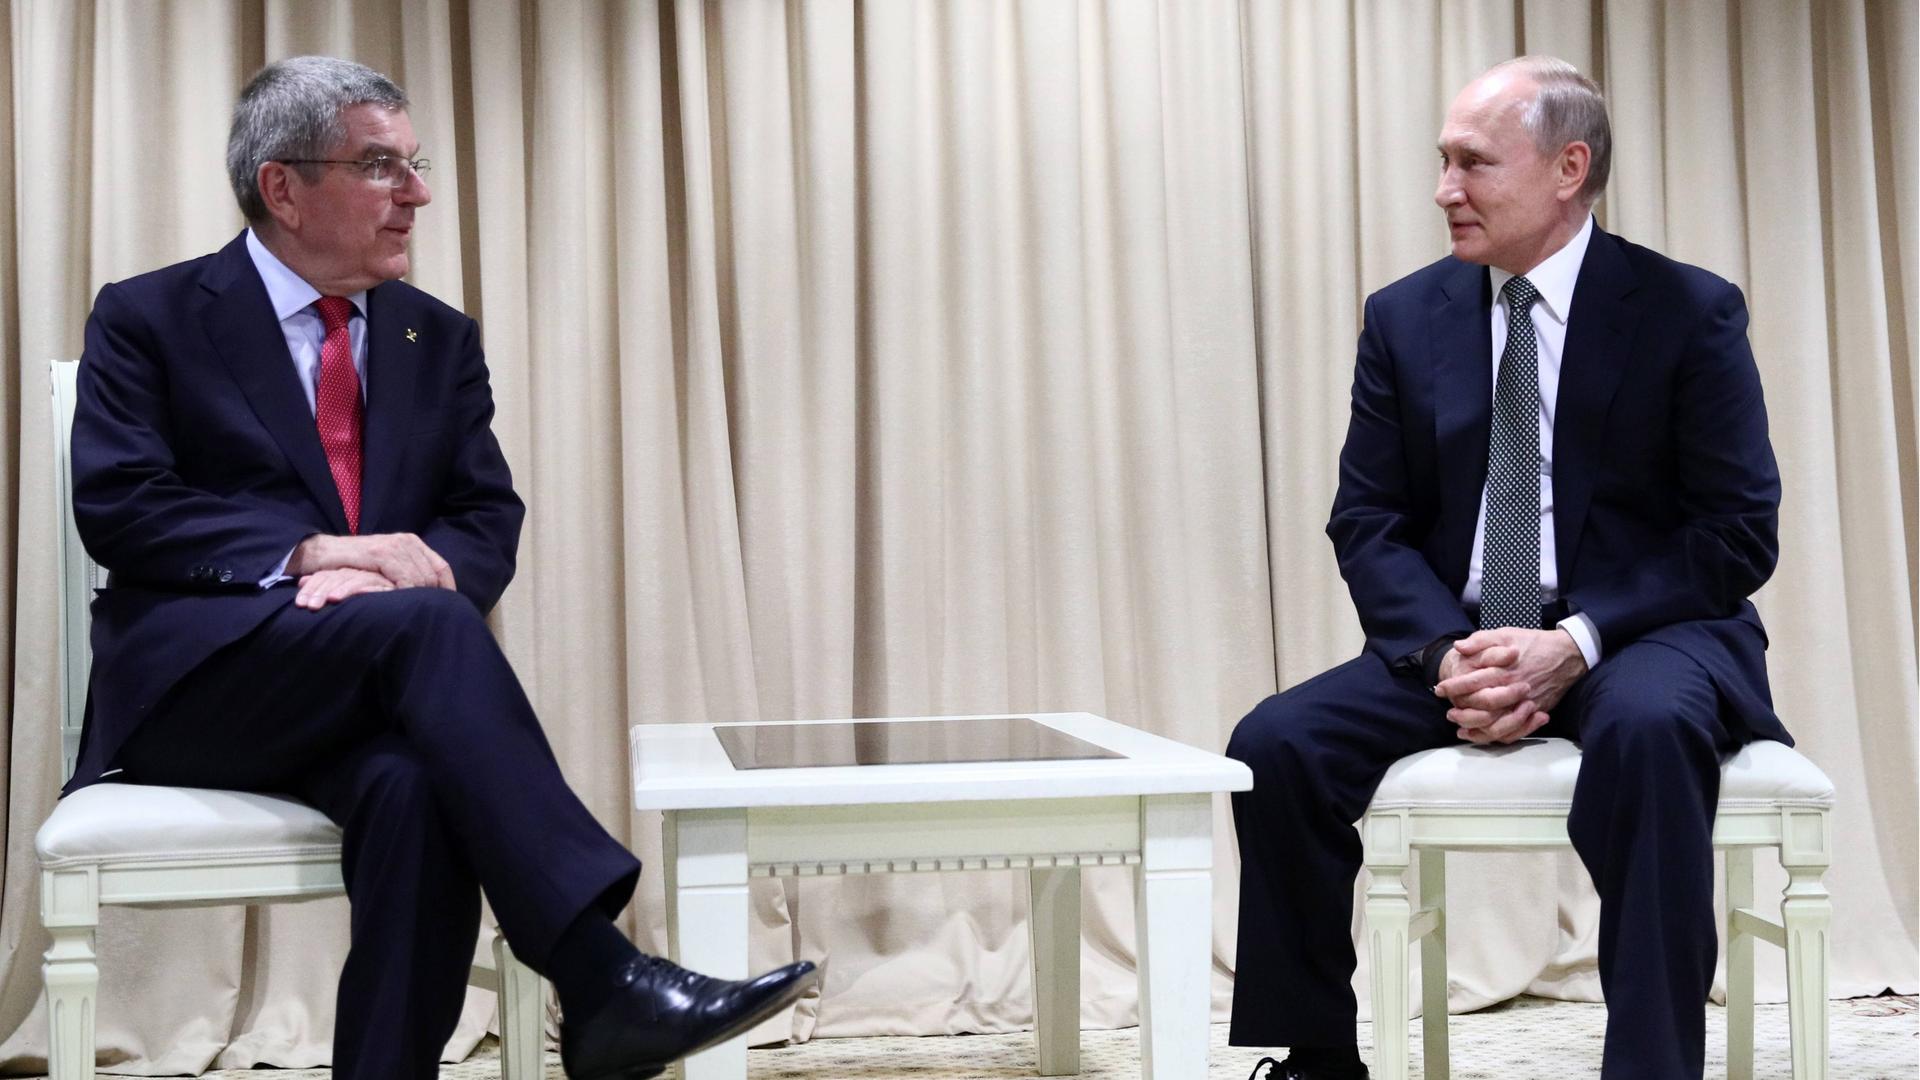 IOC-Präsident Thomas Bach (l.) im Gespräch mit dem russischen Präsidenten Wladimir Putin im Jahr 2019.